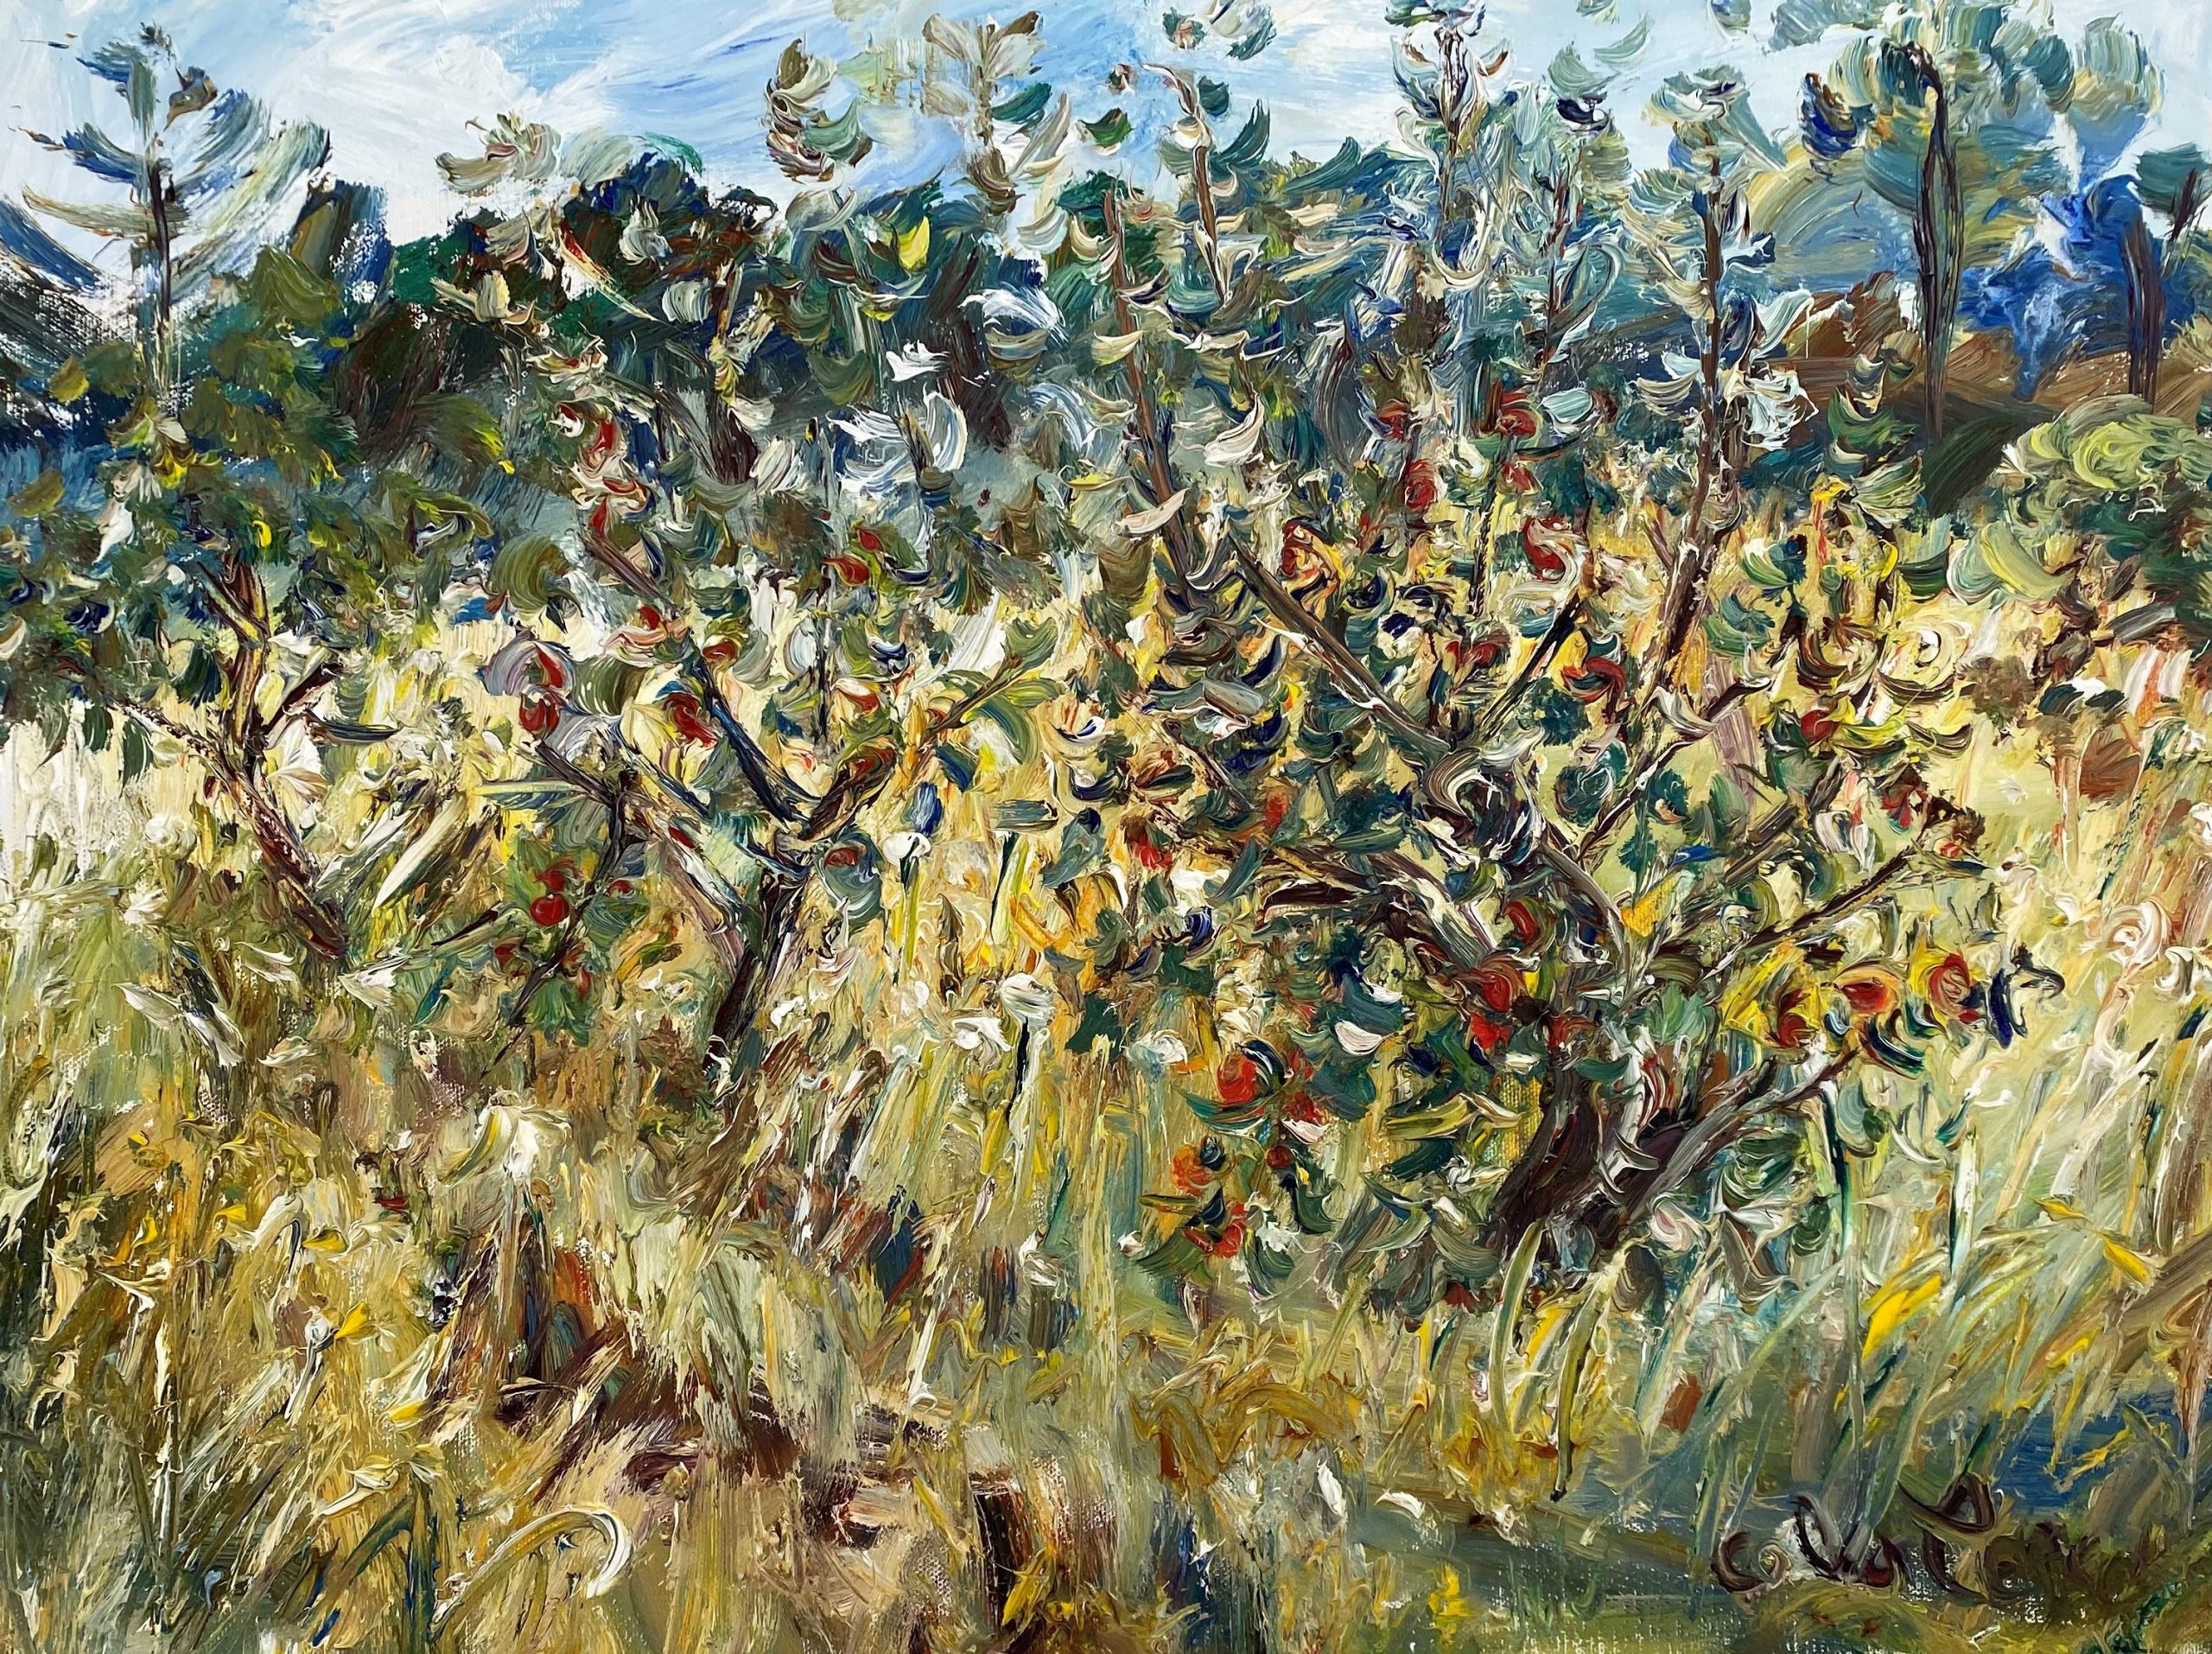 Celia Perceval 'Apple Orchard at Merricks North' oil on canvas 46 x 61cm $9,000